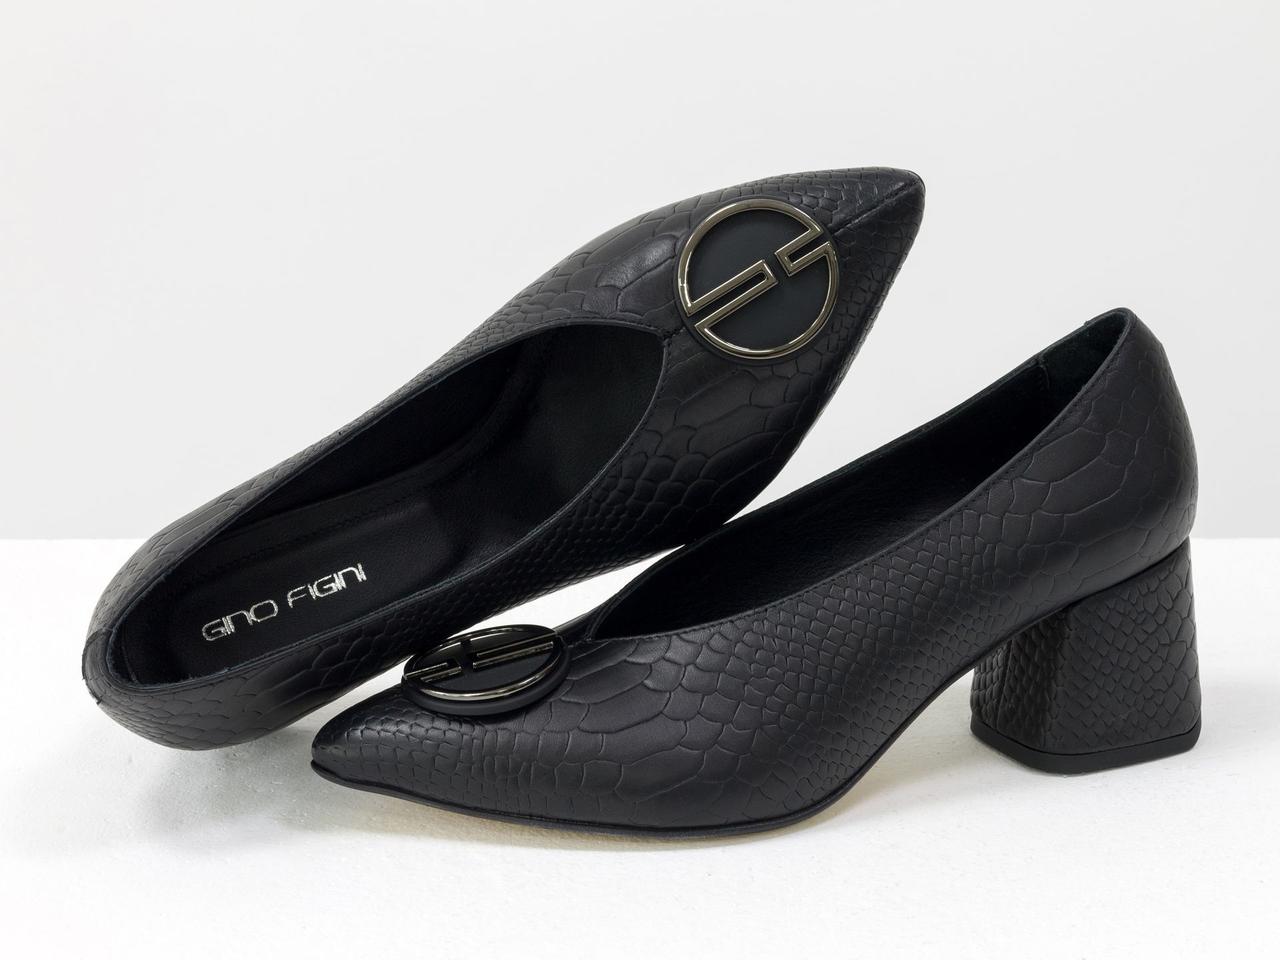 Туфлі на невисокому каблуці, виконані з натуральної шкіри чорного кольору з текстурою пітон